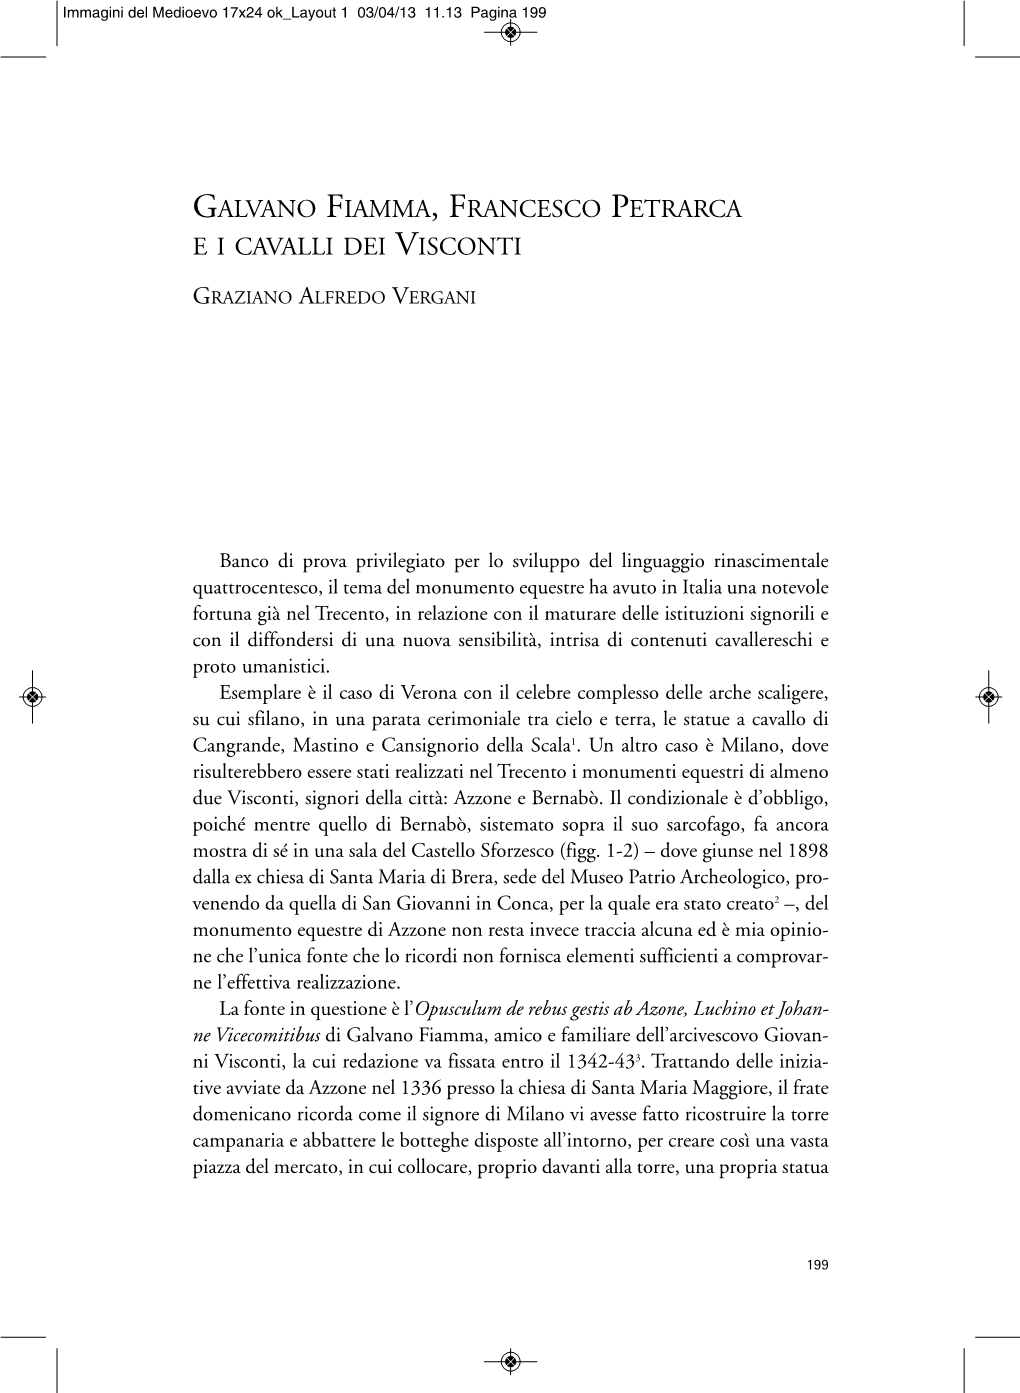 Galvano Fiamma, Francesco Petrarca E I Cavalli Dei